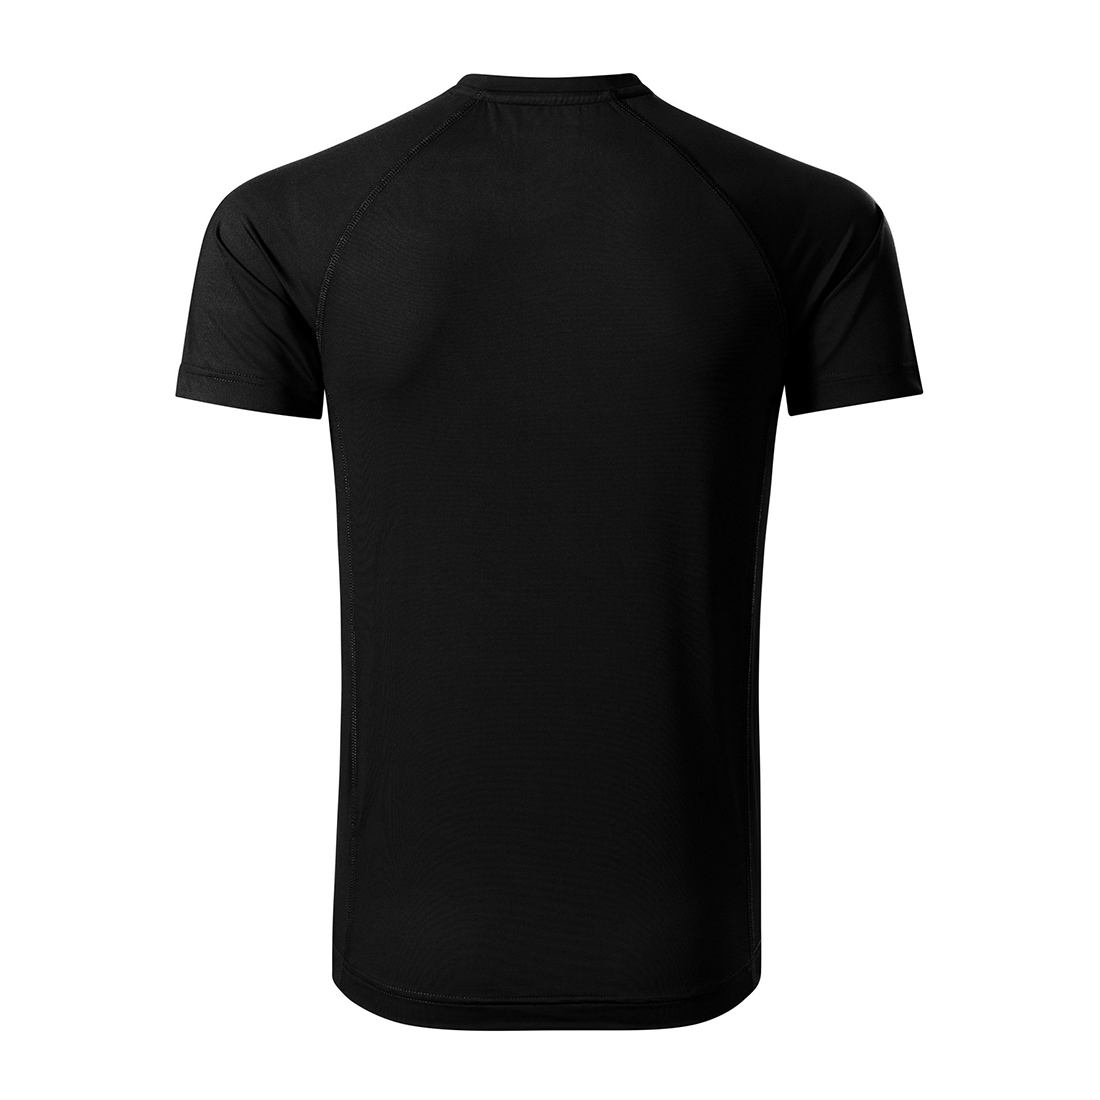 Tee-shirt homme DESTINY - Les vêtements de protection